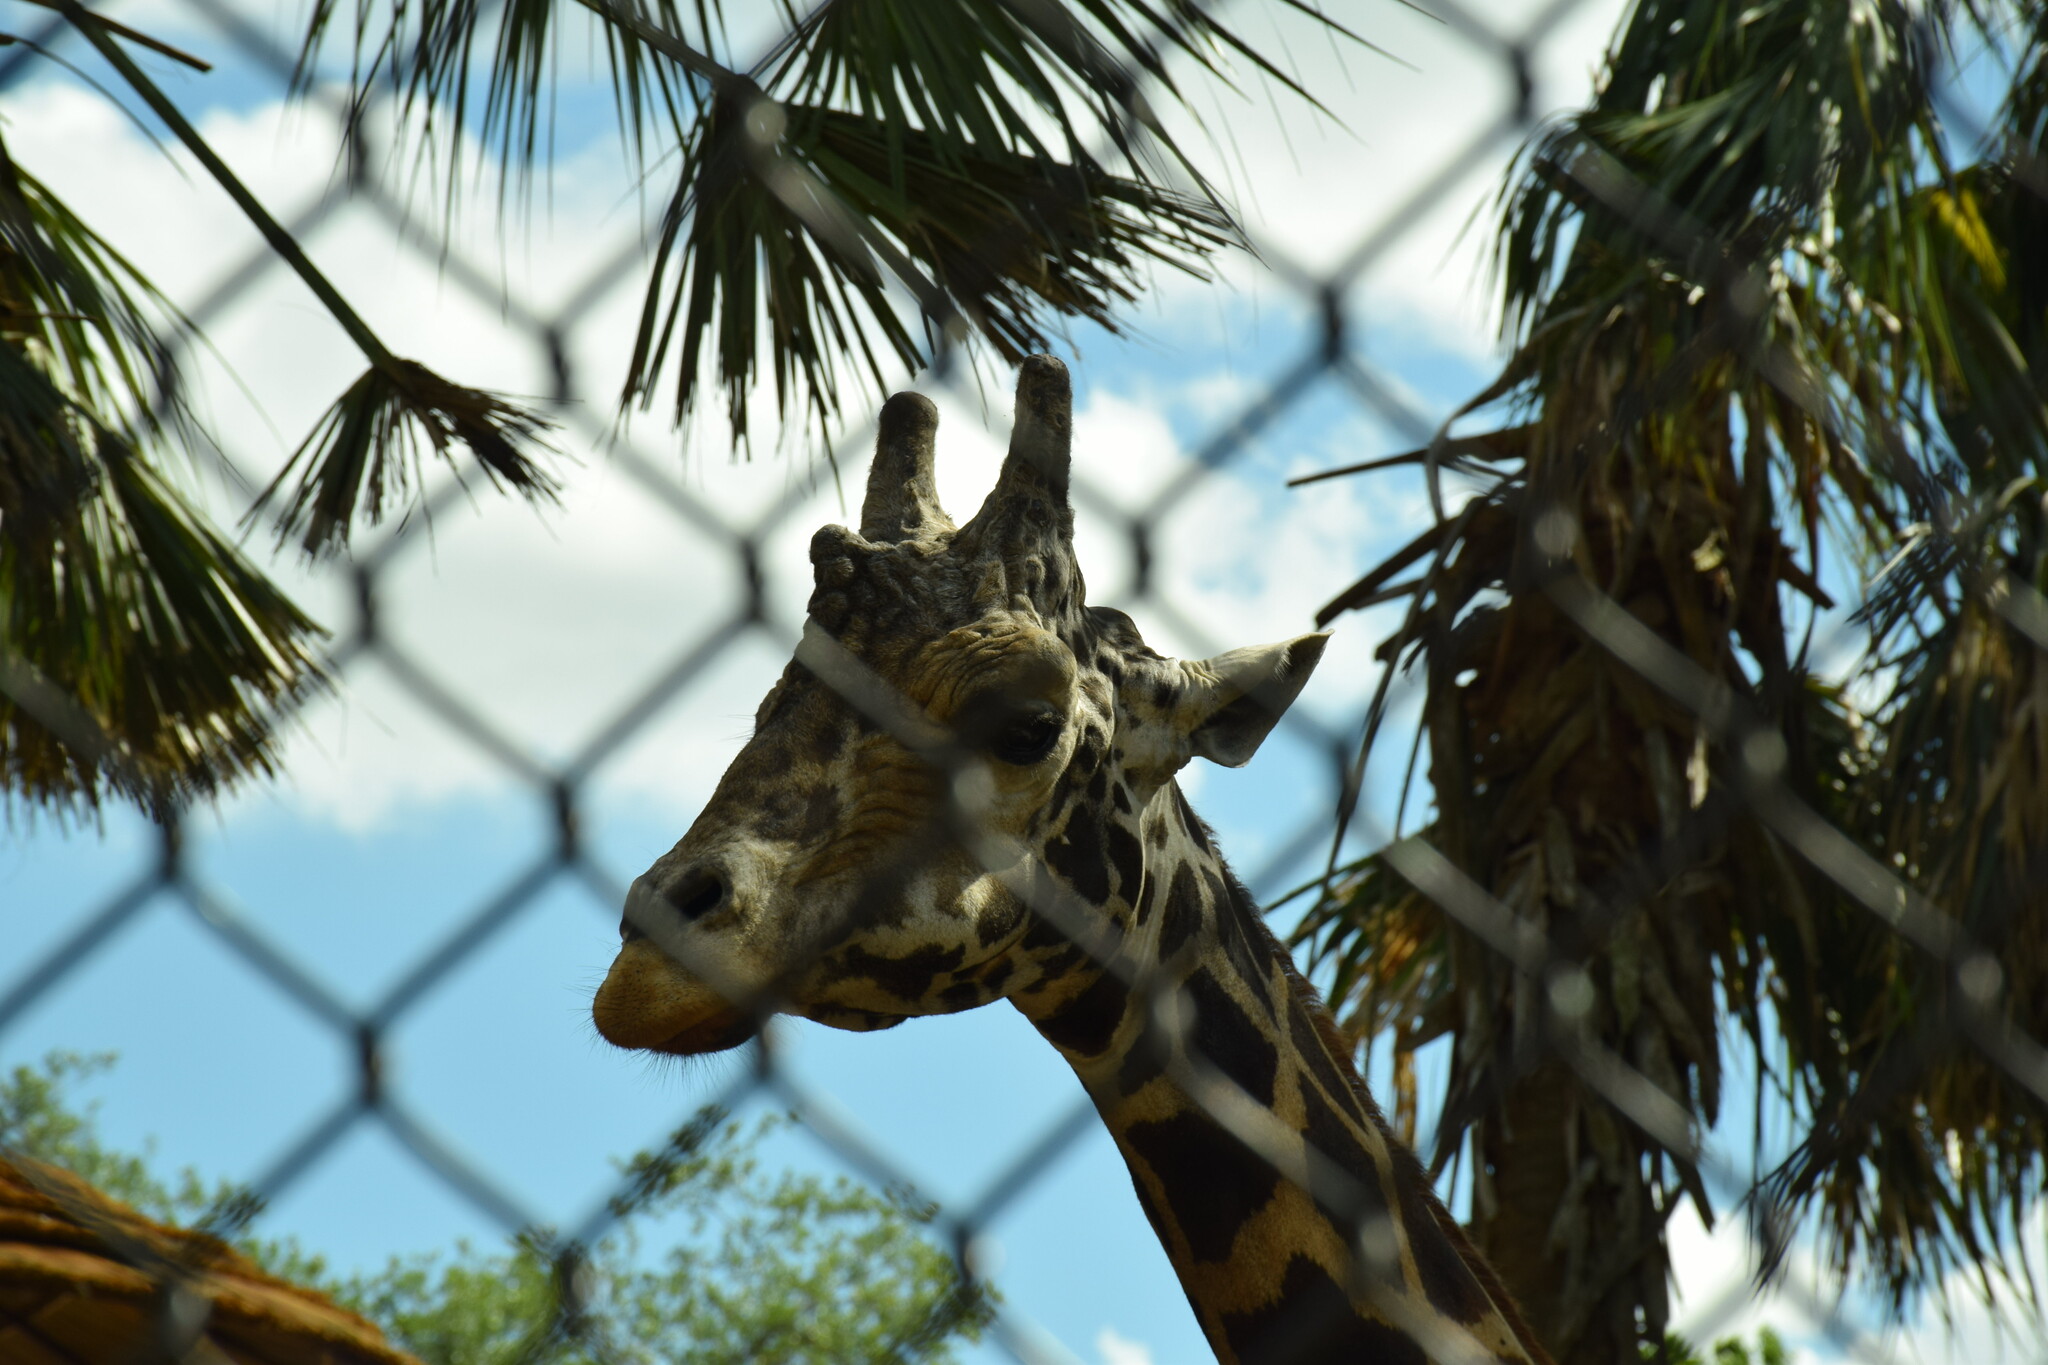 A giraffe at the Central Florida Zoo